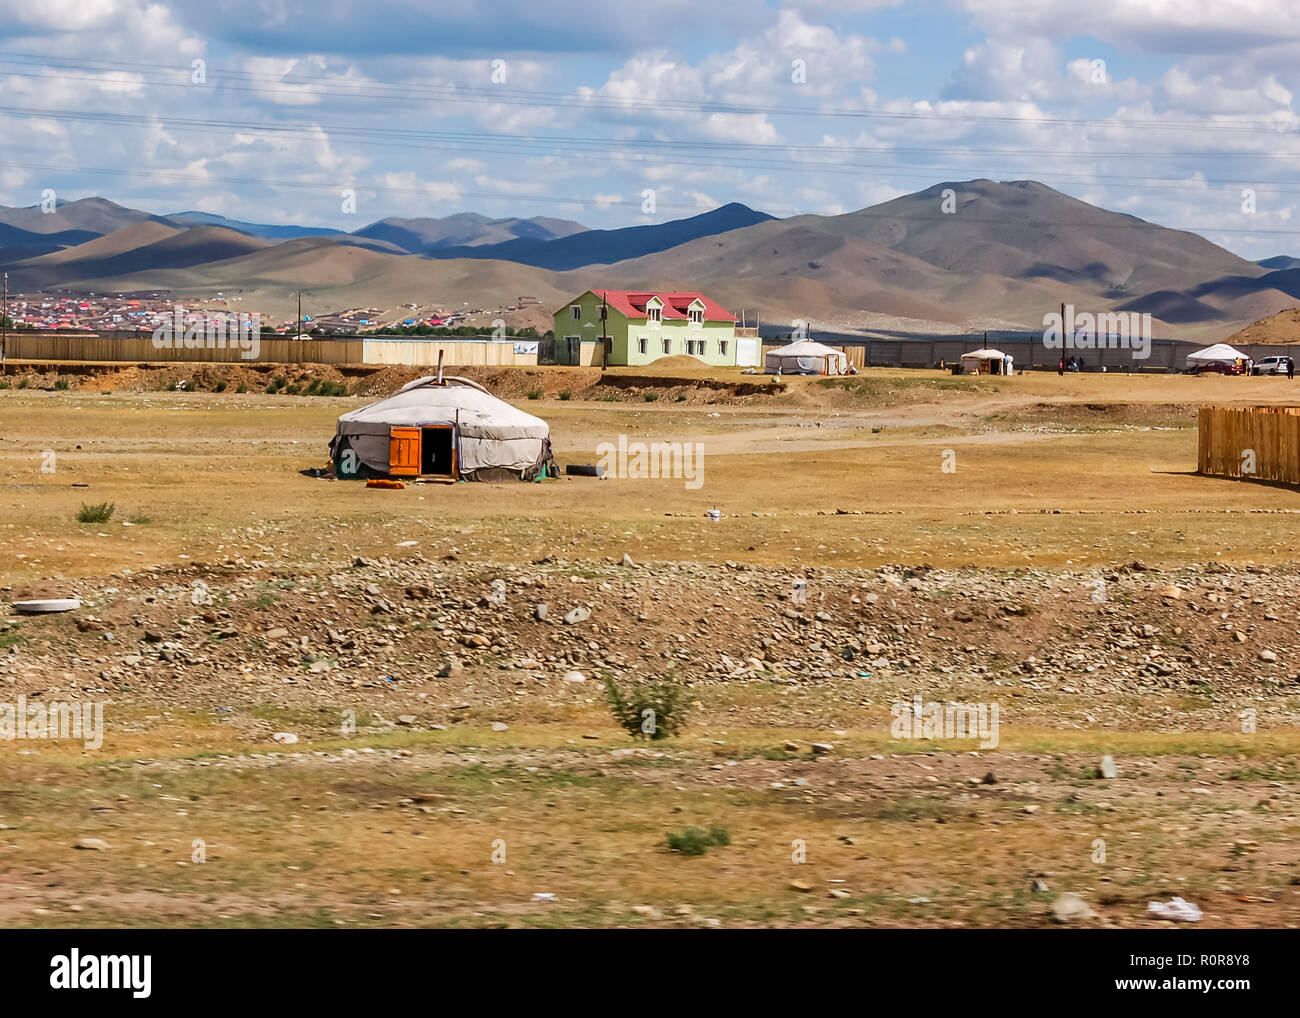 Ulaanbaatar, Mongolia - Julio 10, 2010: Casas & yurts llamados gers en las afueras de Ulaanbaatar, capital de Mongolia. Foto de stock